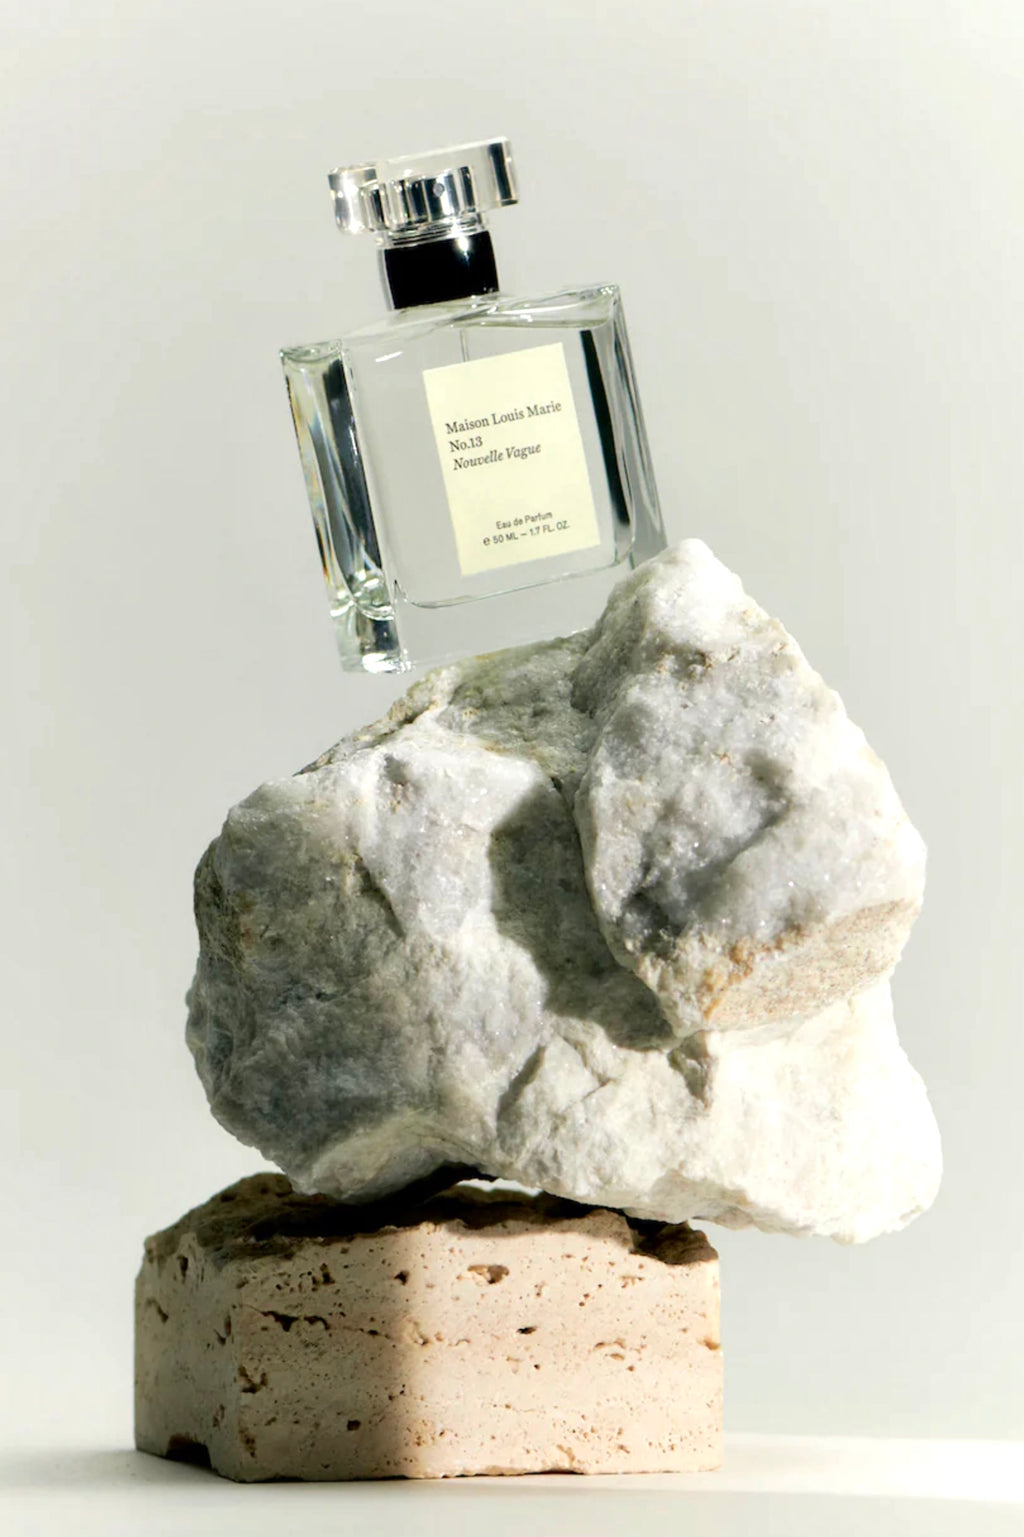 No.13 Nouvelle Vague Perfume